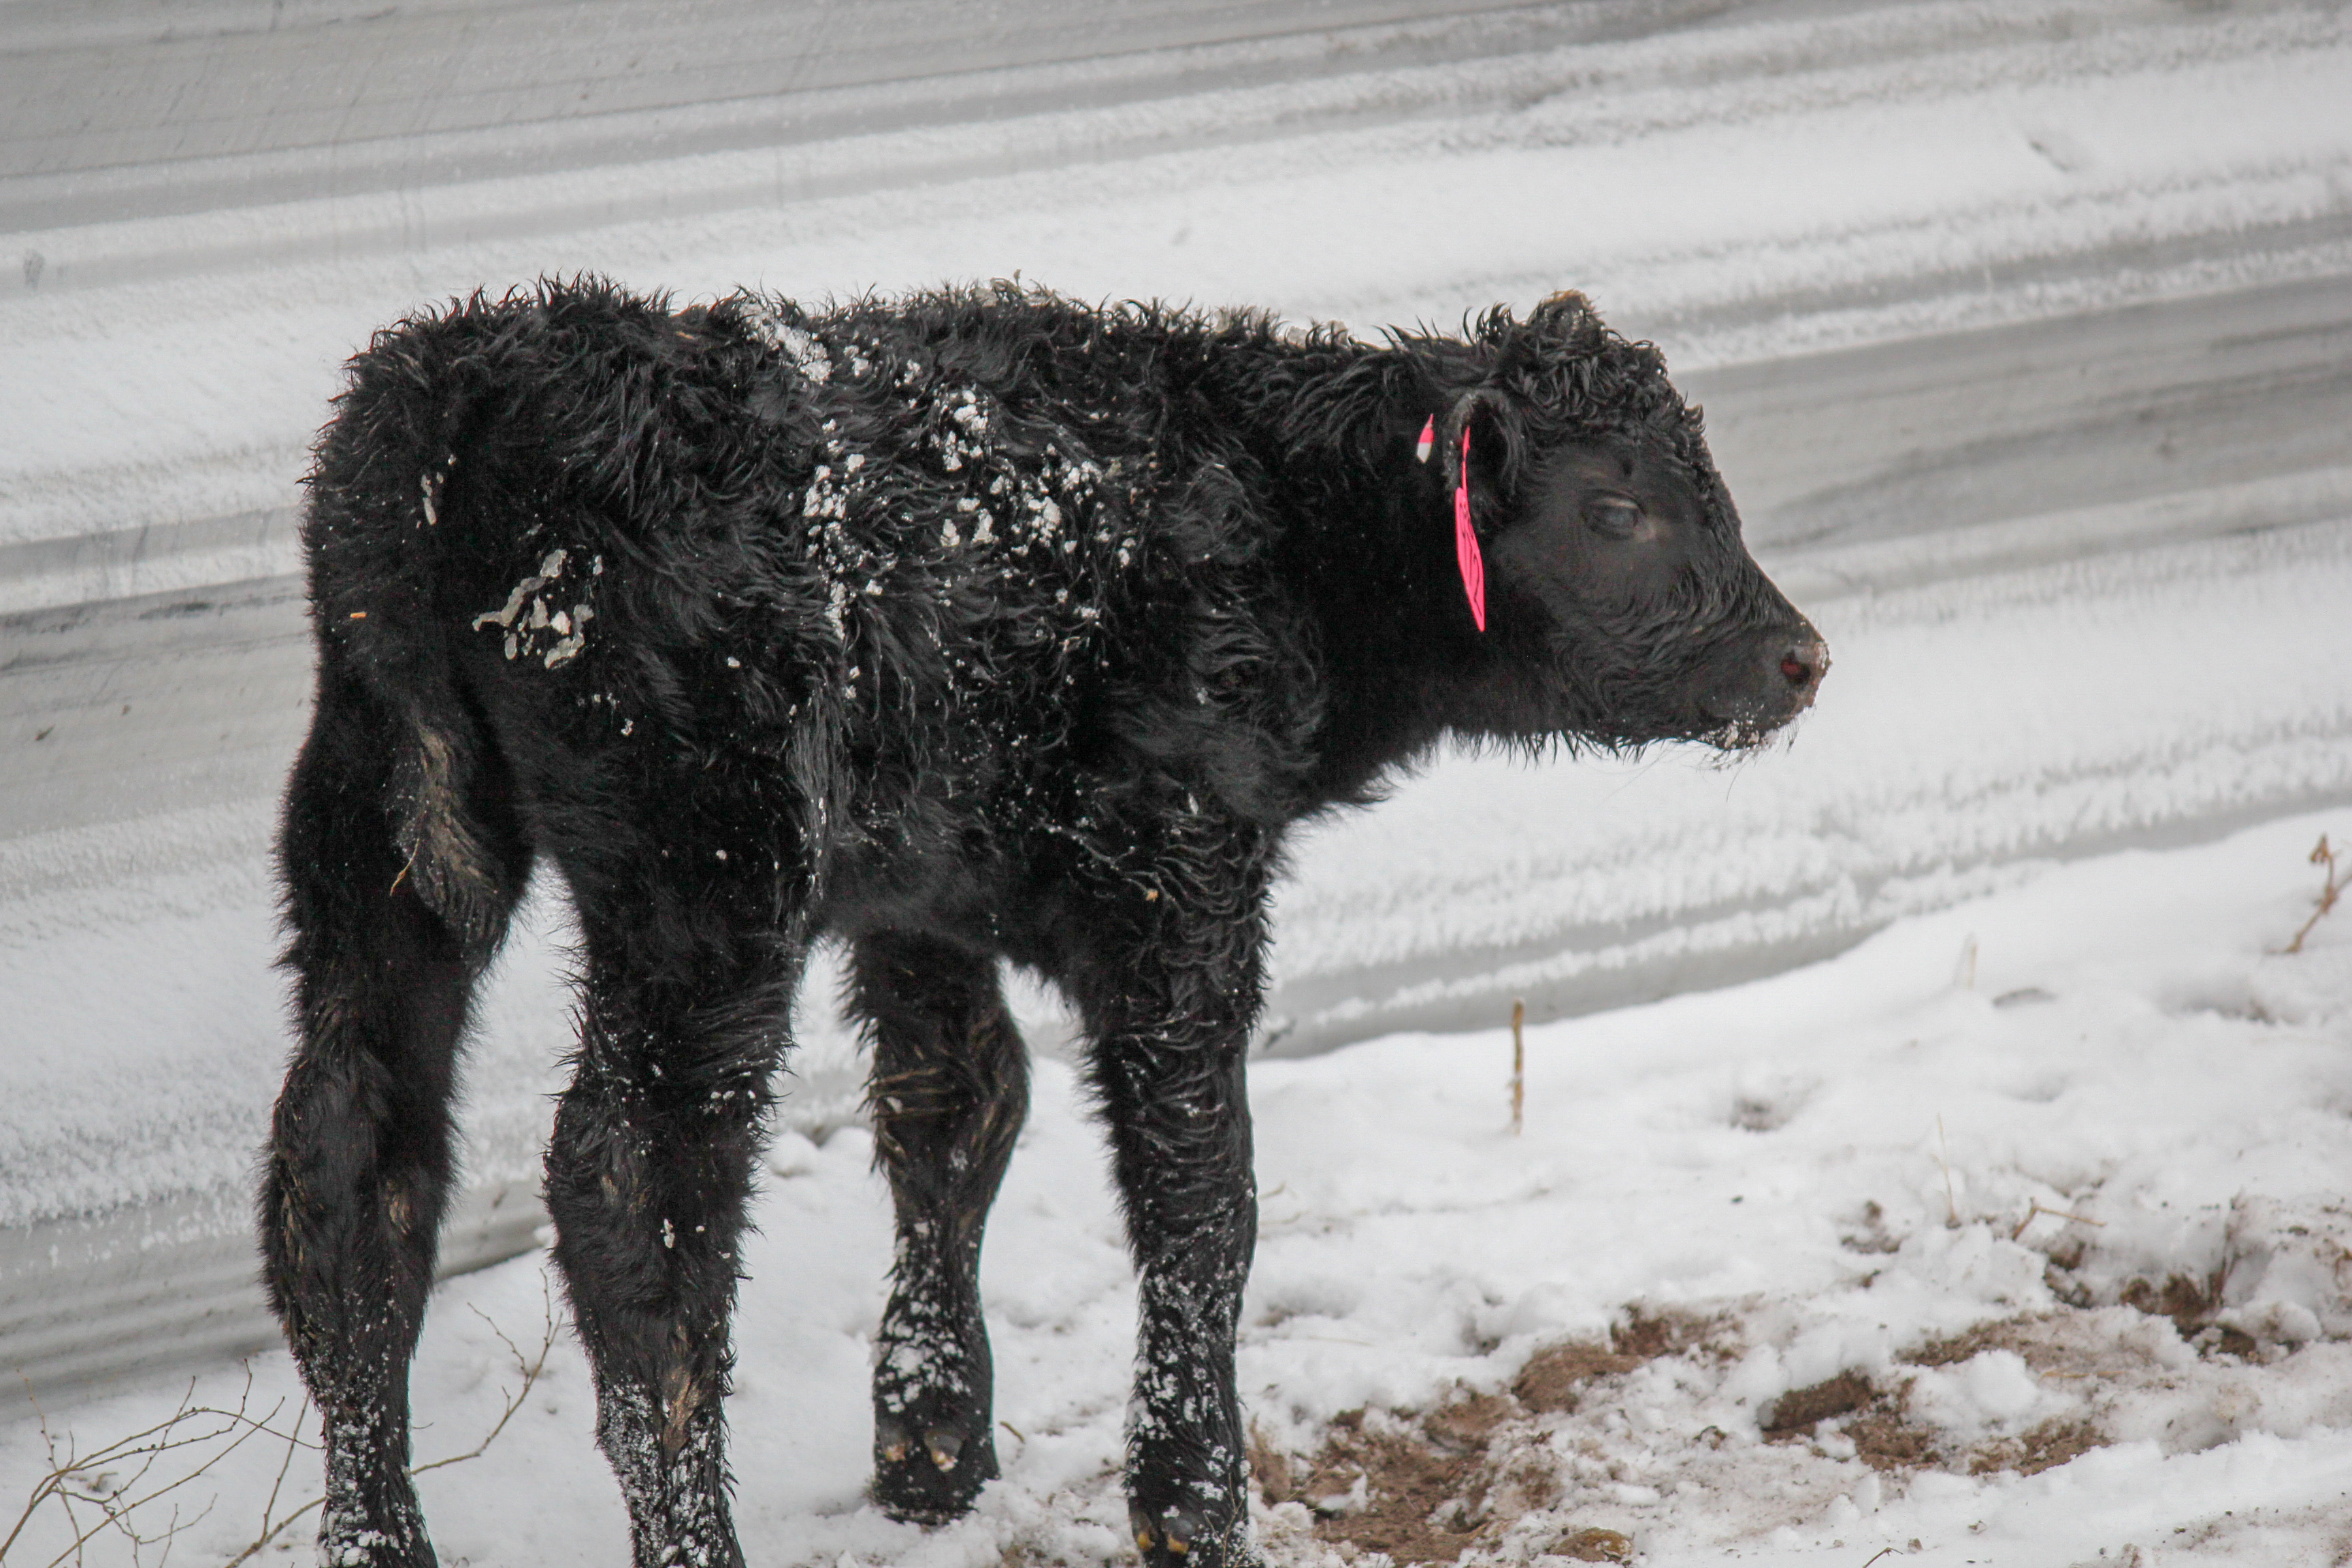 Calf in front of windbreak